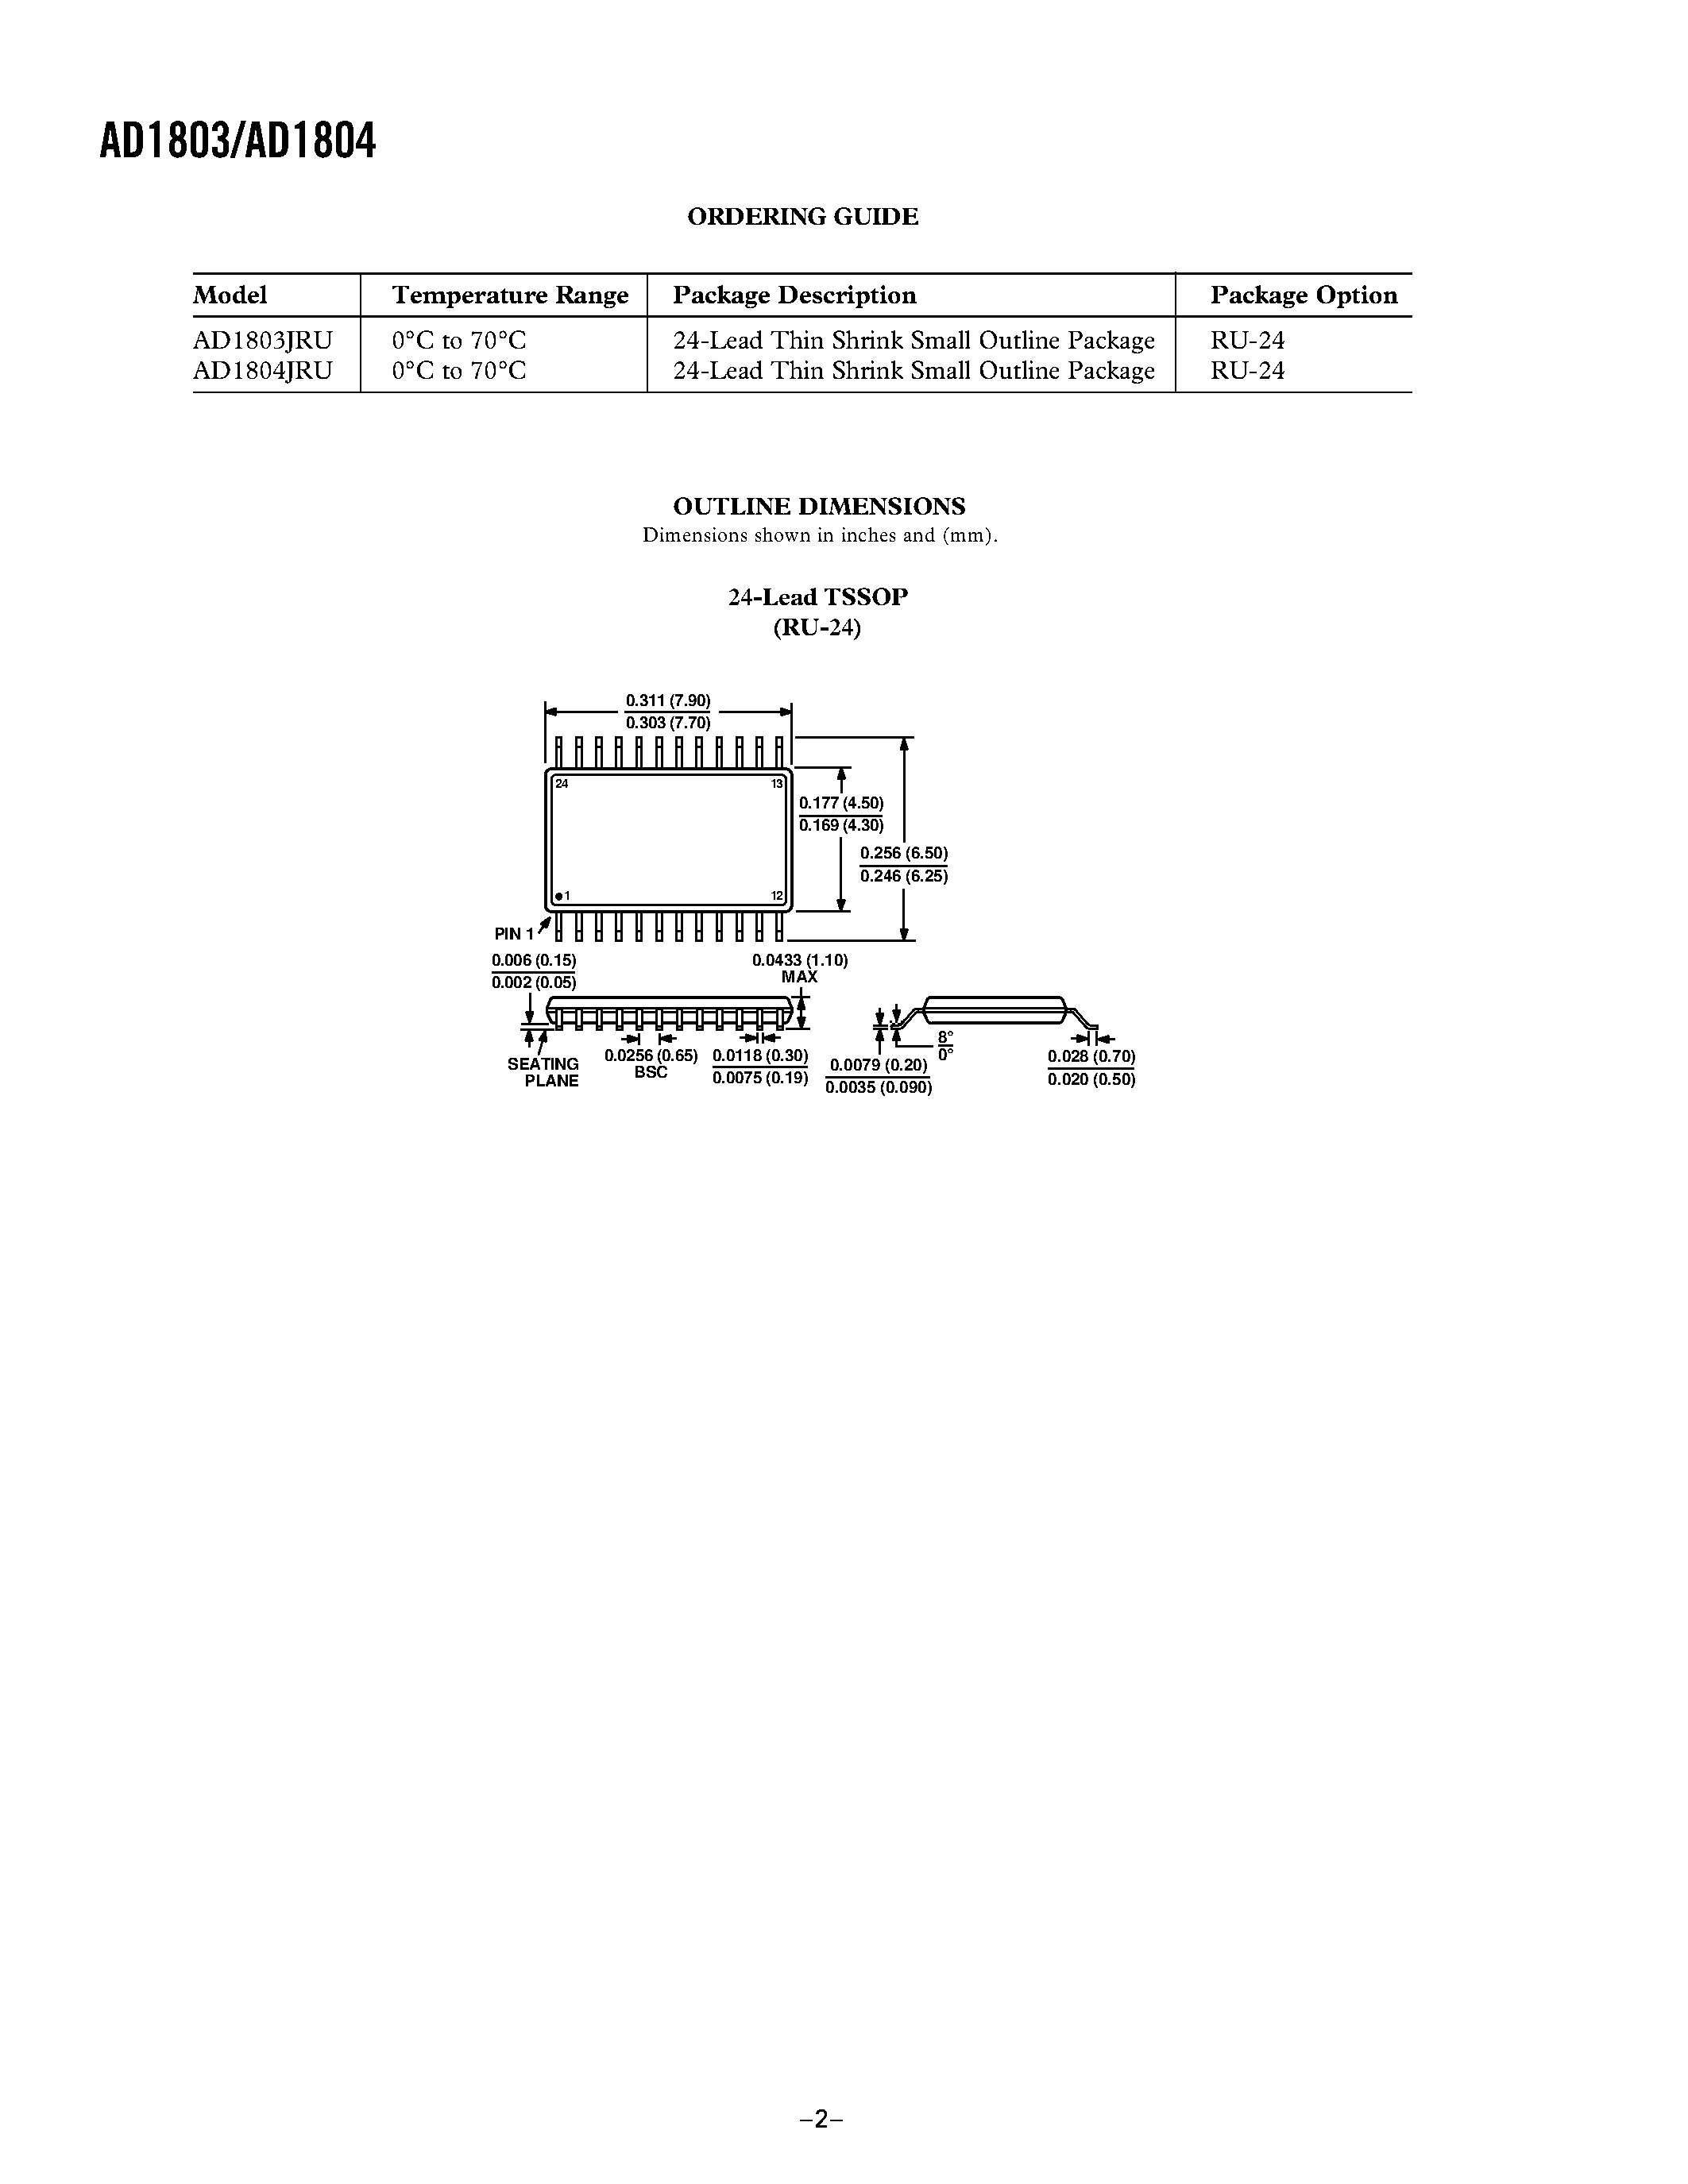 Даташит AD1804JRU - U.S./International Modem DAA Line Codec Chipset страница 2